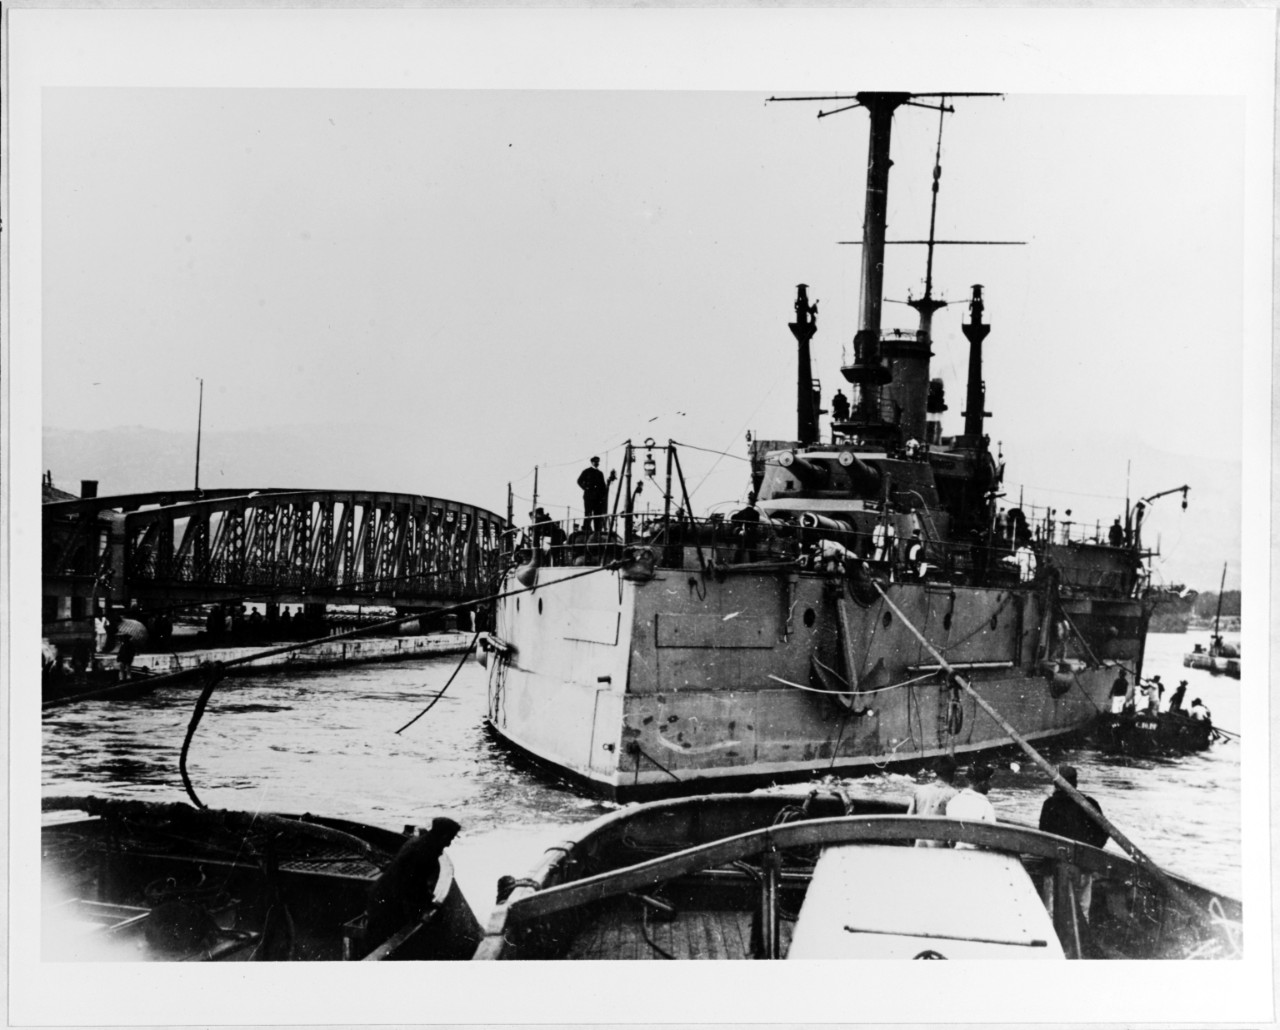 BRETAGNE (French Battleship, 1913-1940)